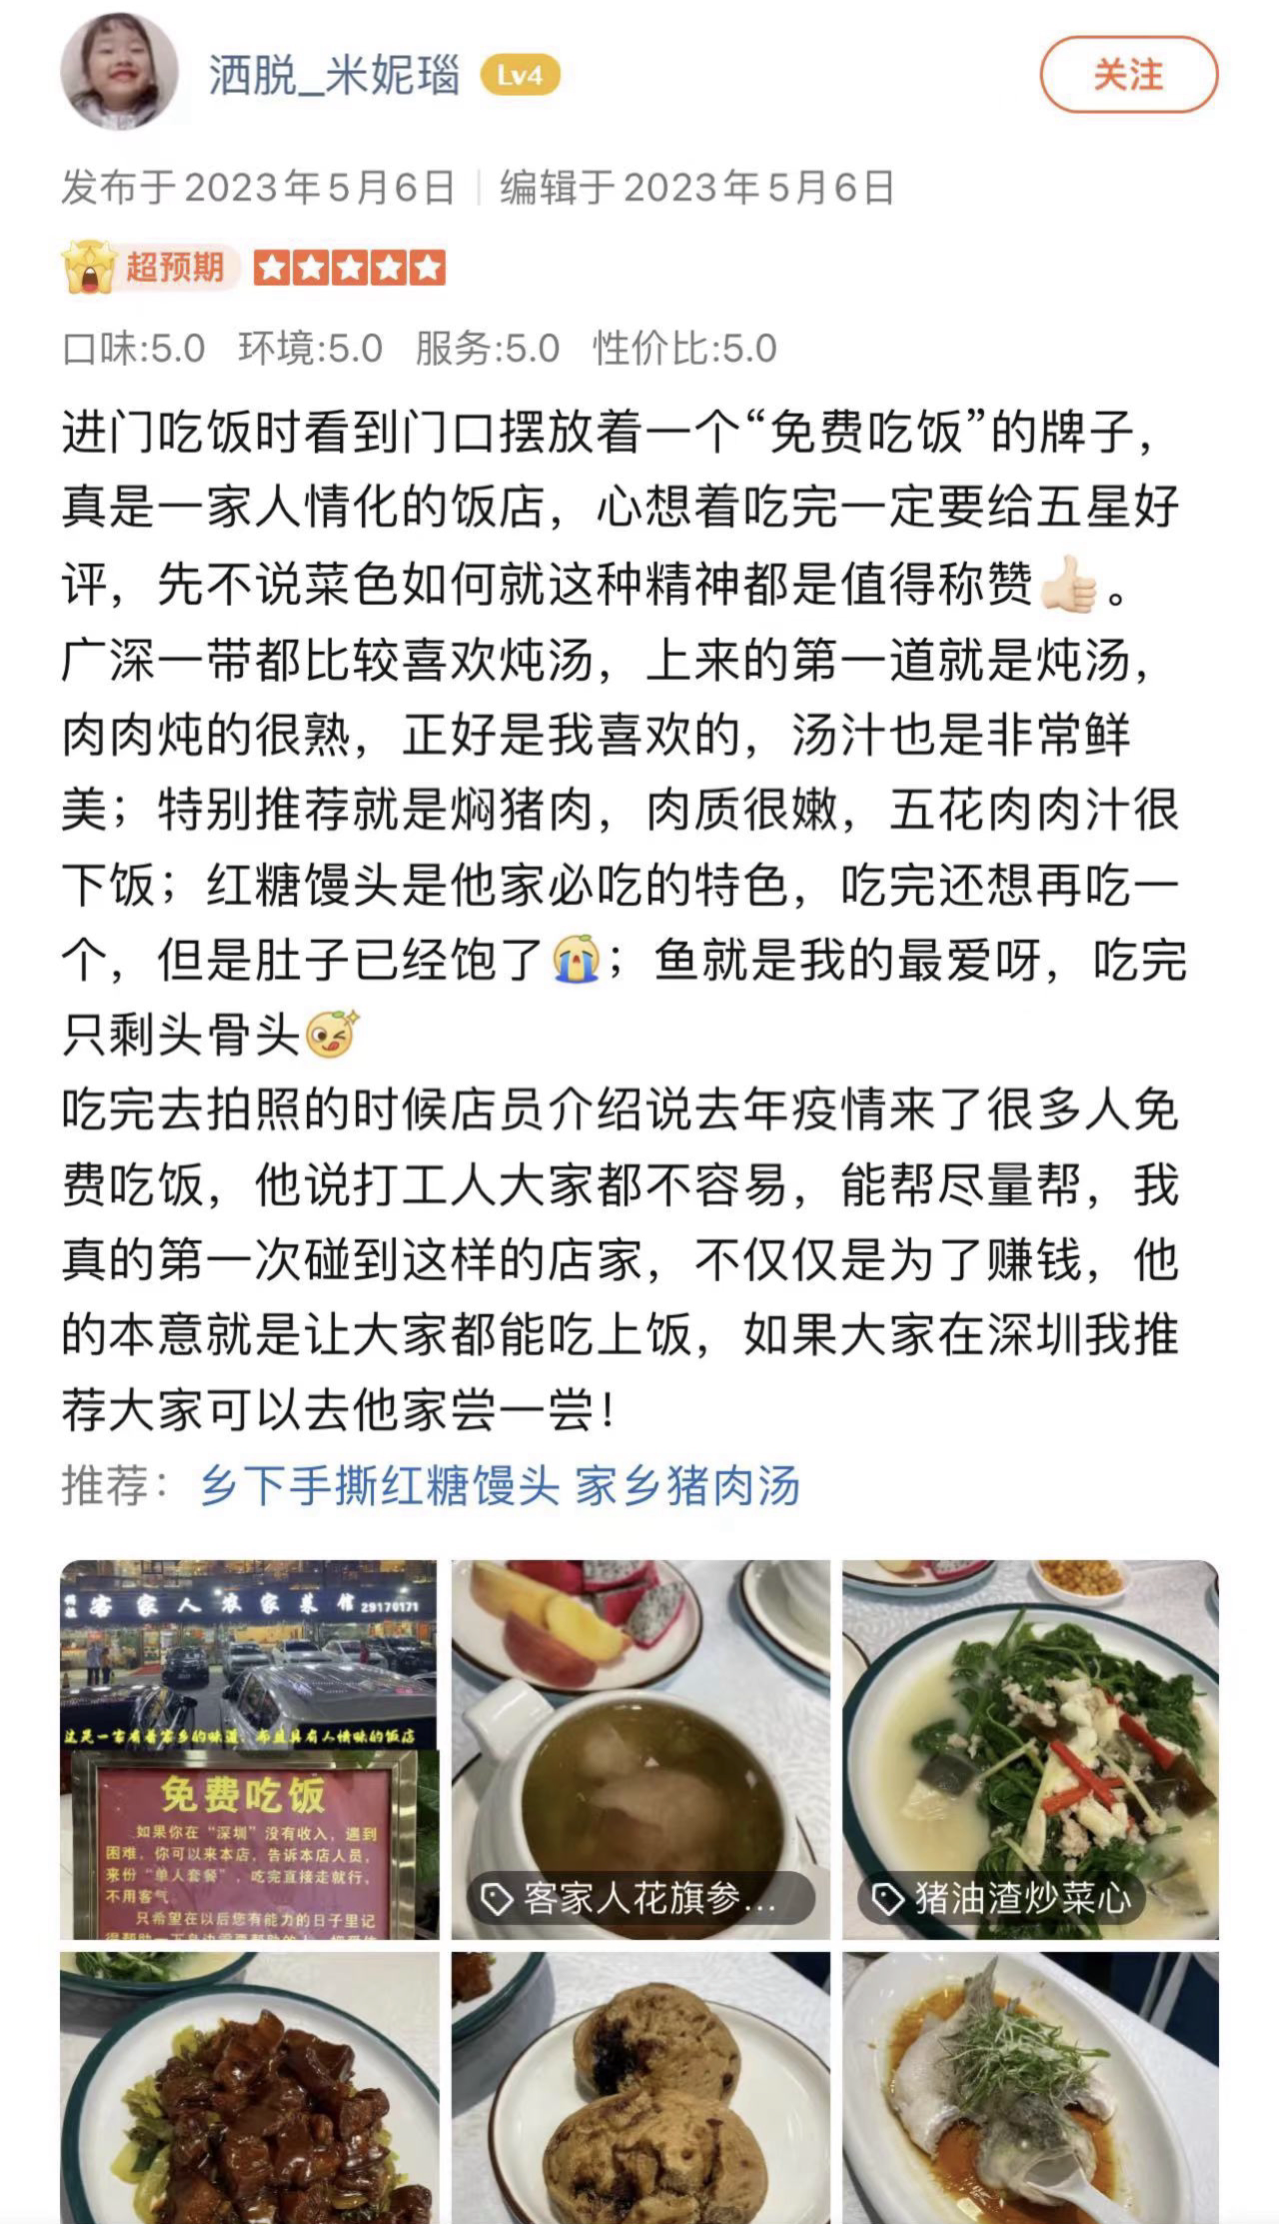 遇到困難可免費吃飯！深圳一餐館老板“免費午餐”送了5年6